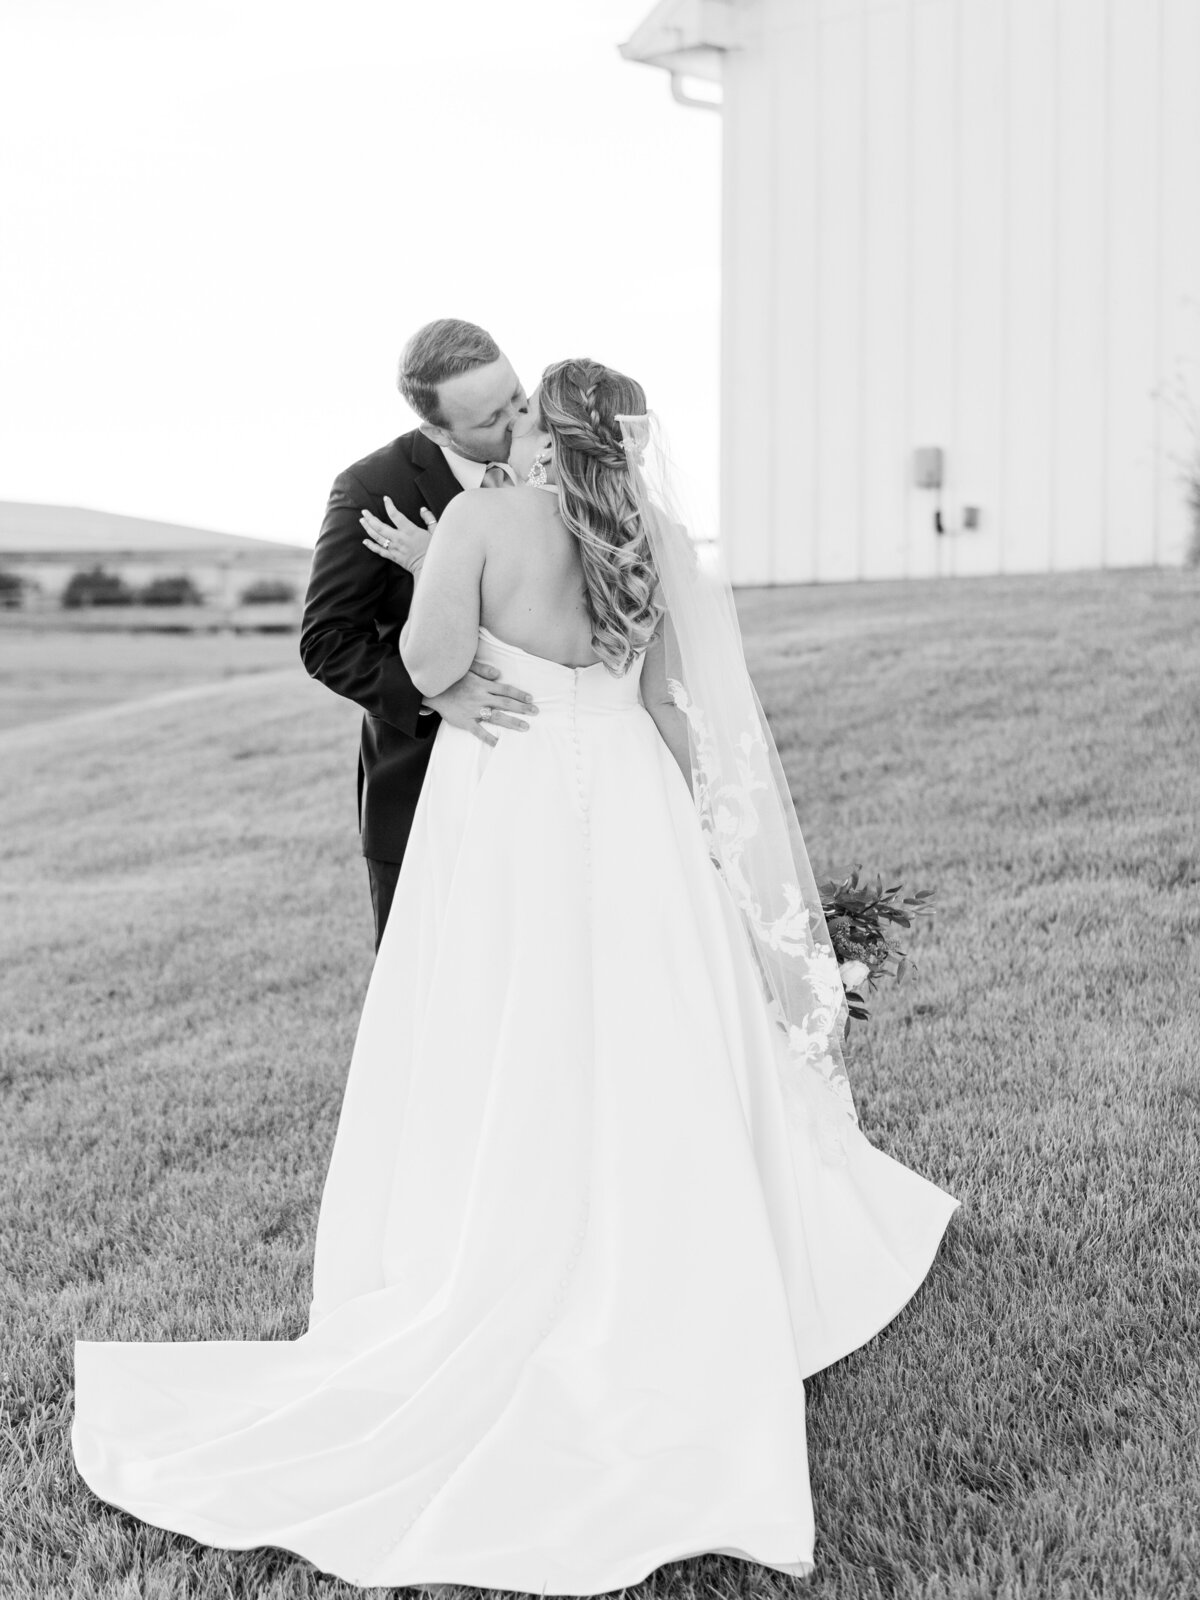 the-farmhouse-wedding-houston-texas-wedding-photographer-mackenzie-reiter-photography-90